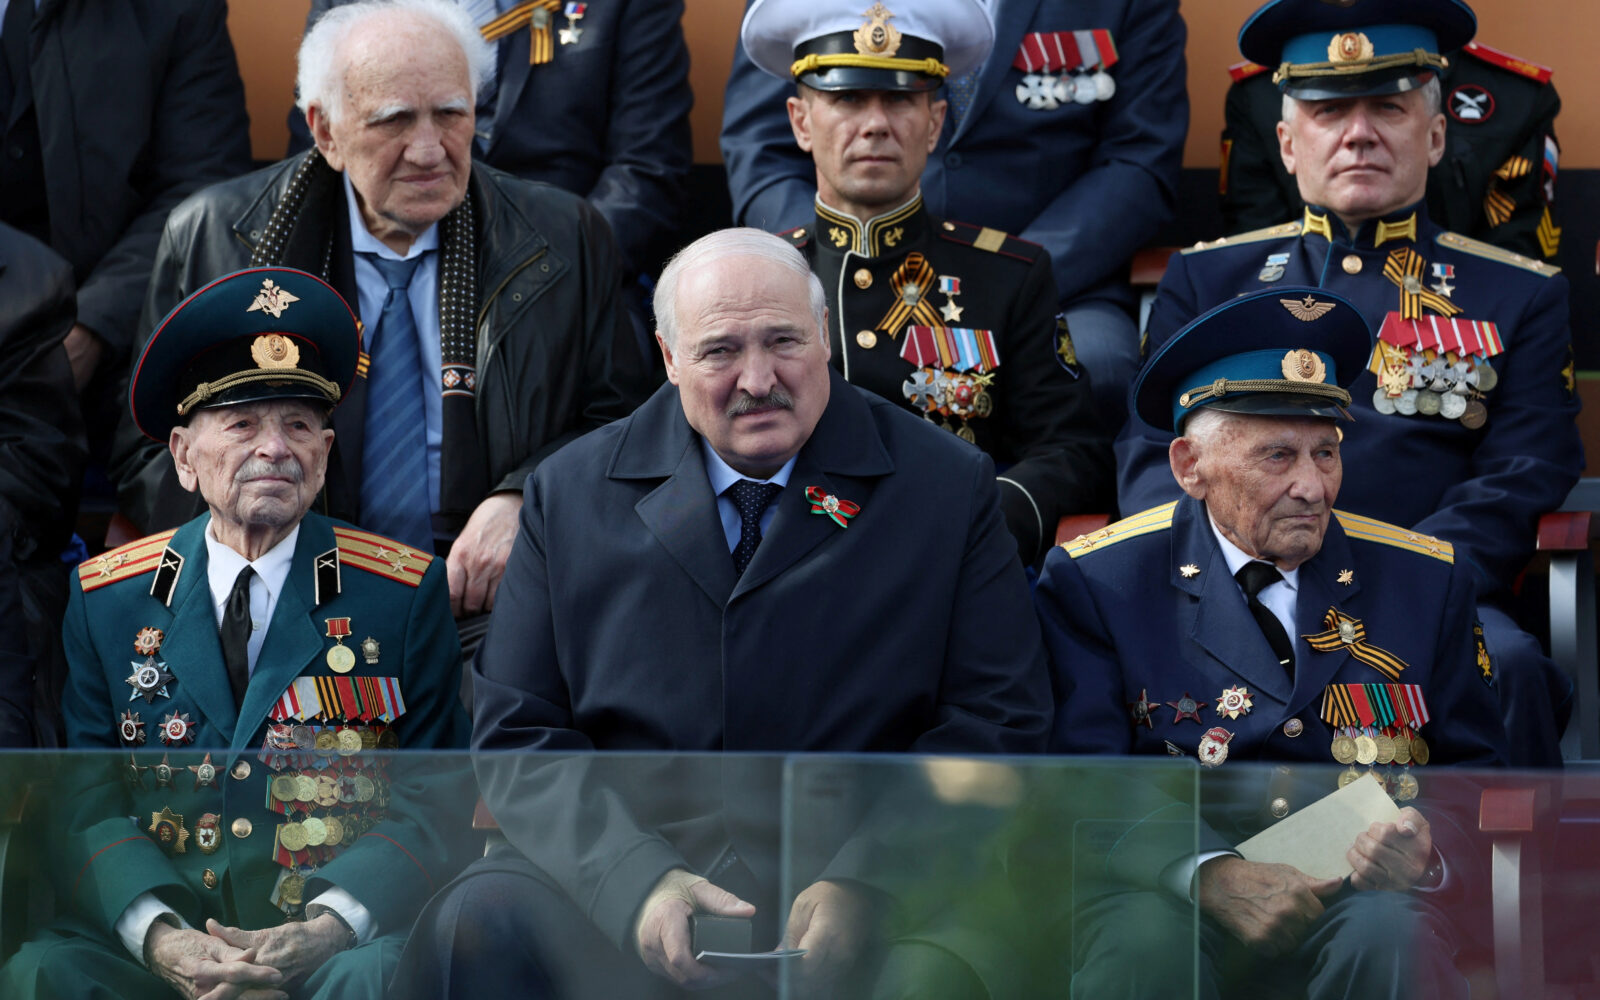 Propustio važan događaj: Lukašenko danima nije viđen u javnosti, nagađa se da je ozbiljno bolestan